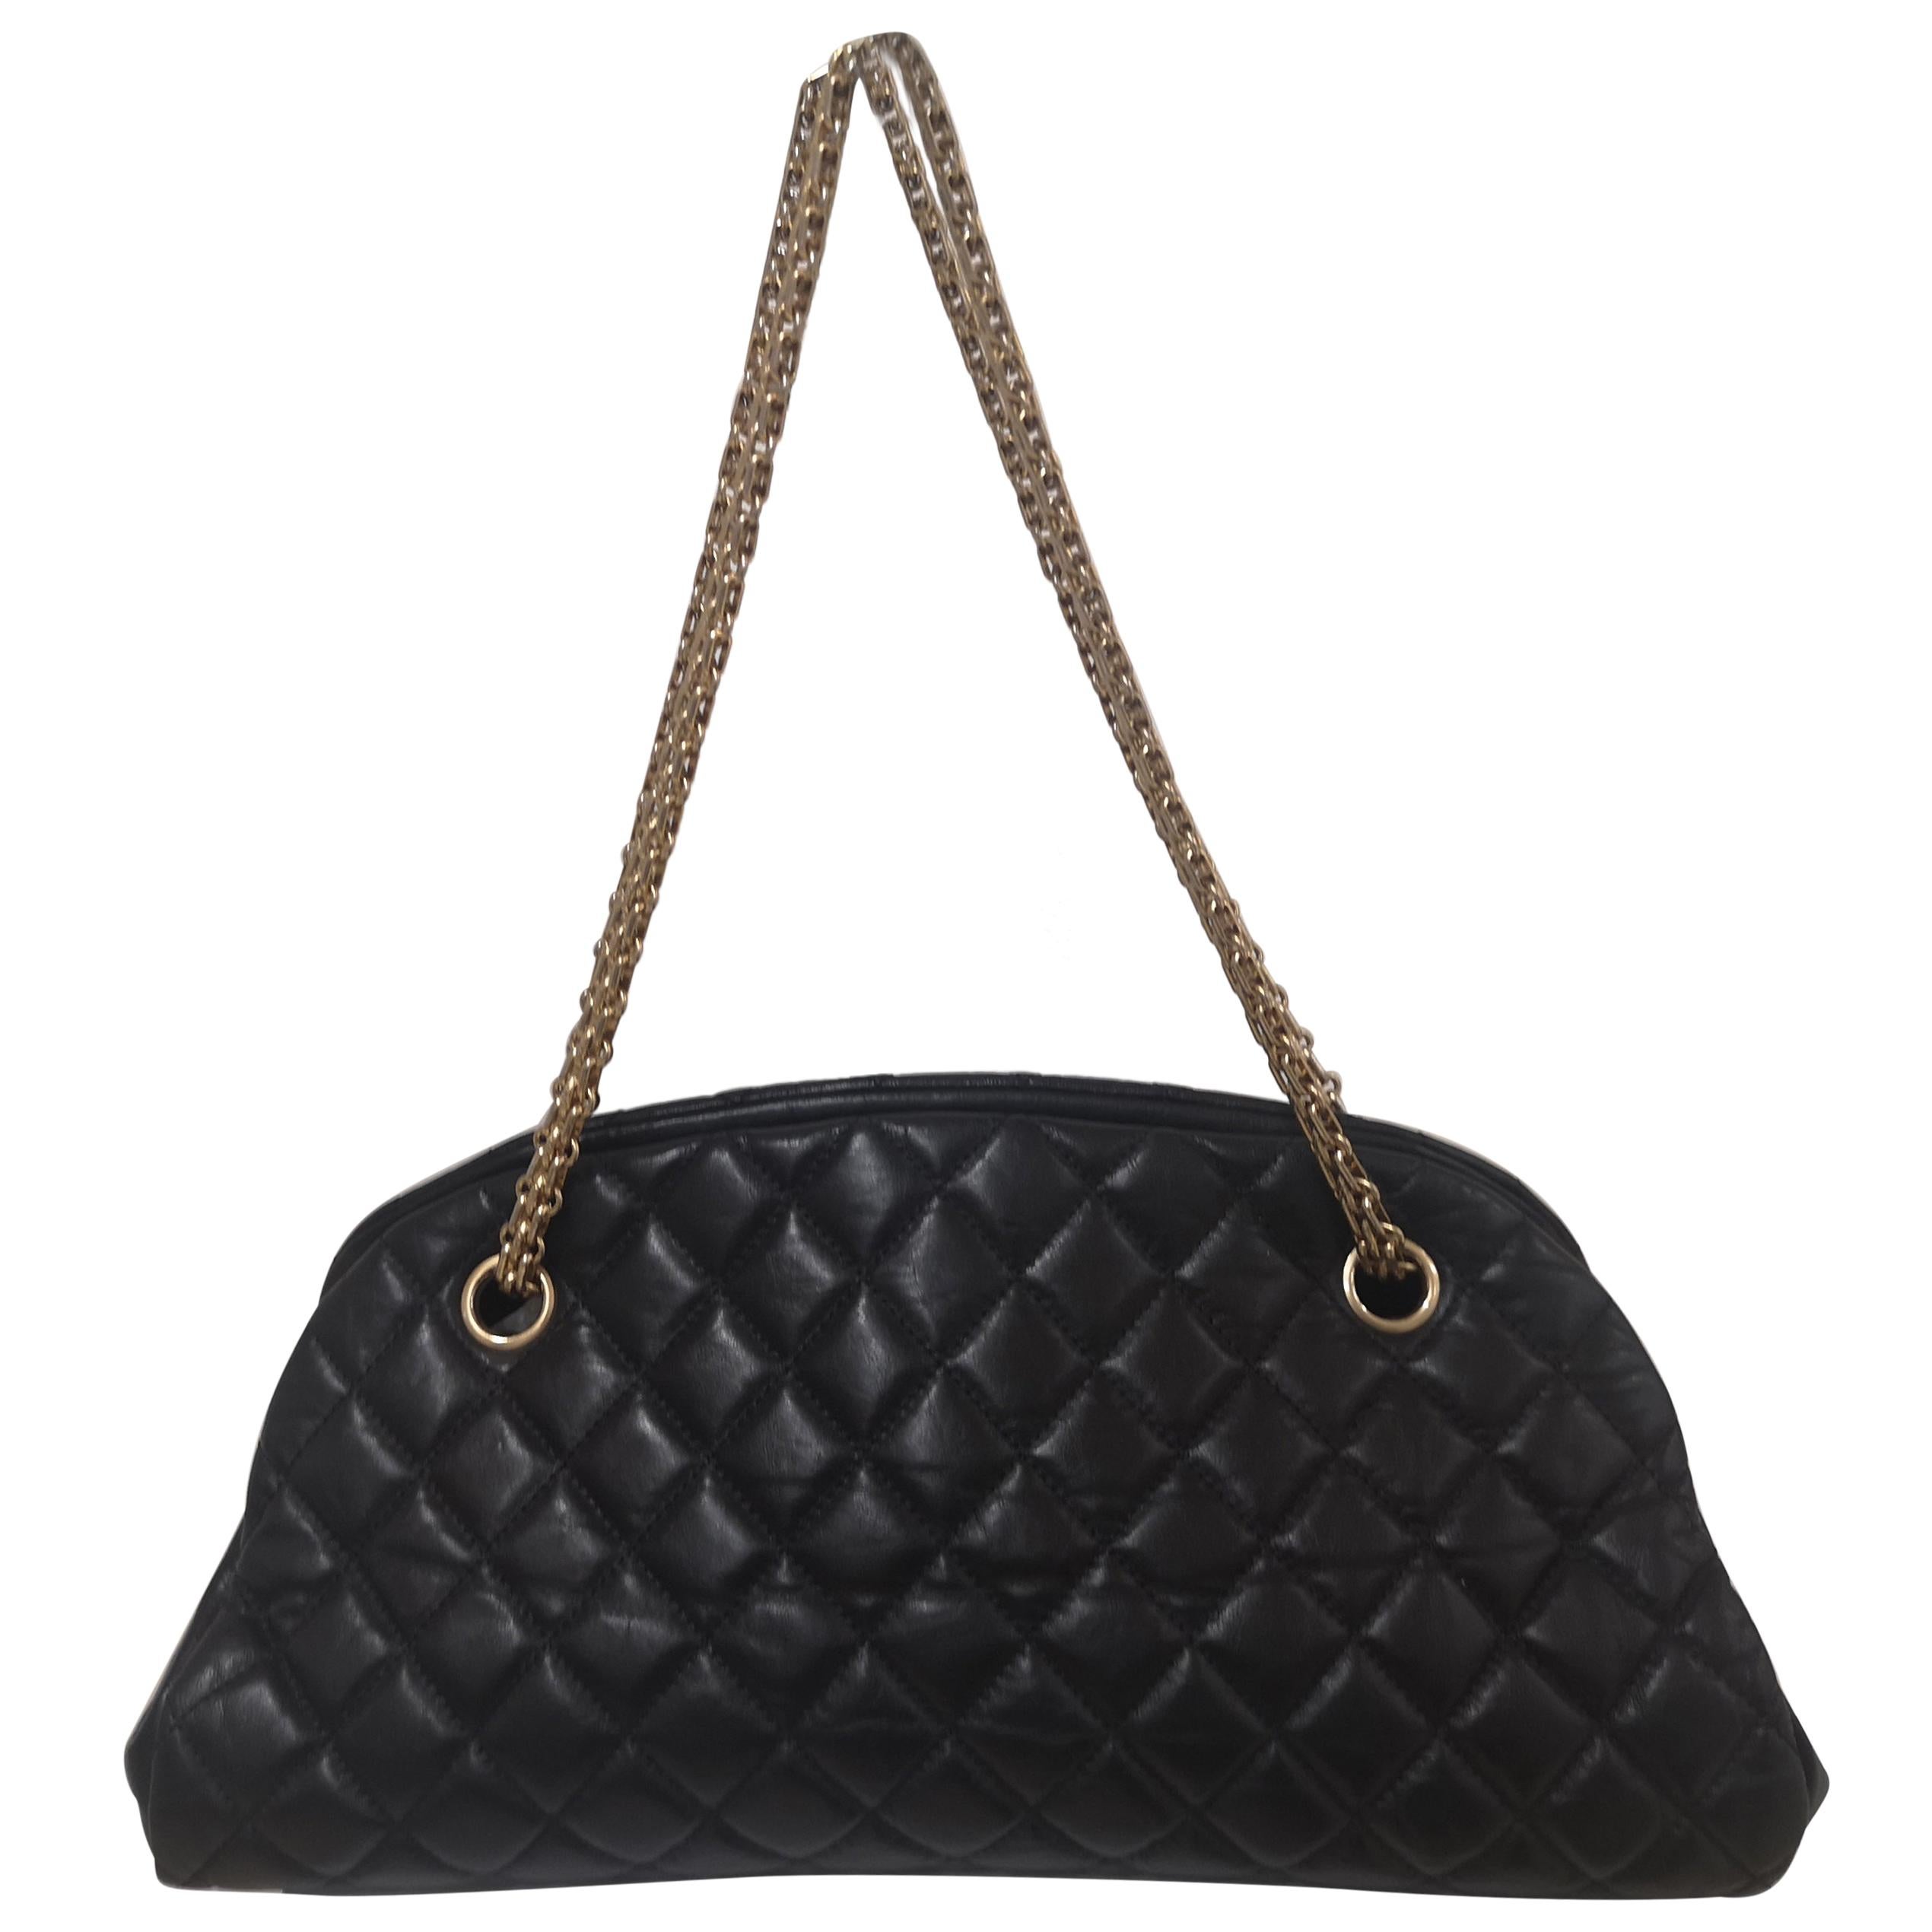 Chanel mademoiselle black leather shoulder bag